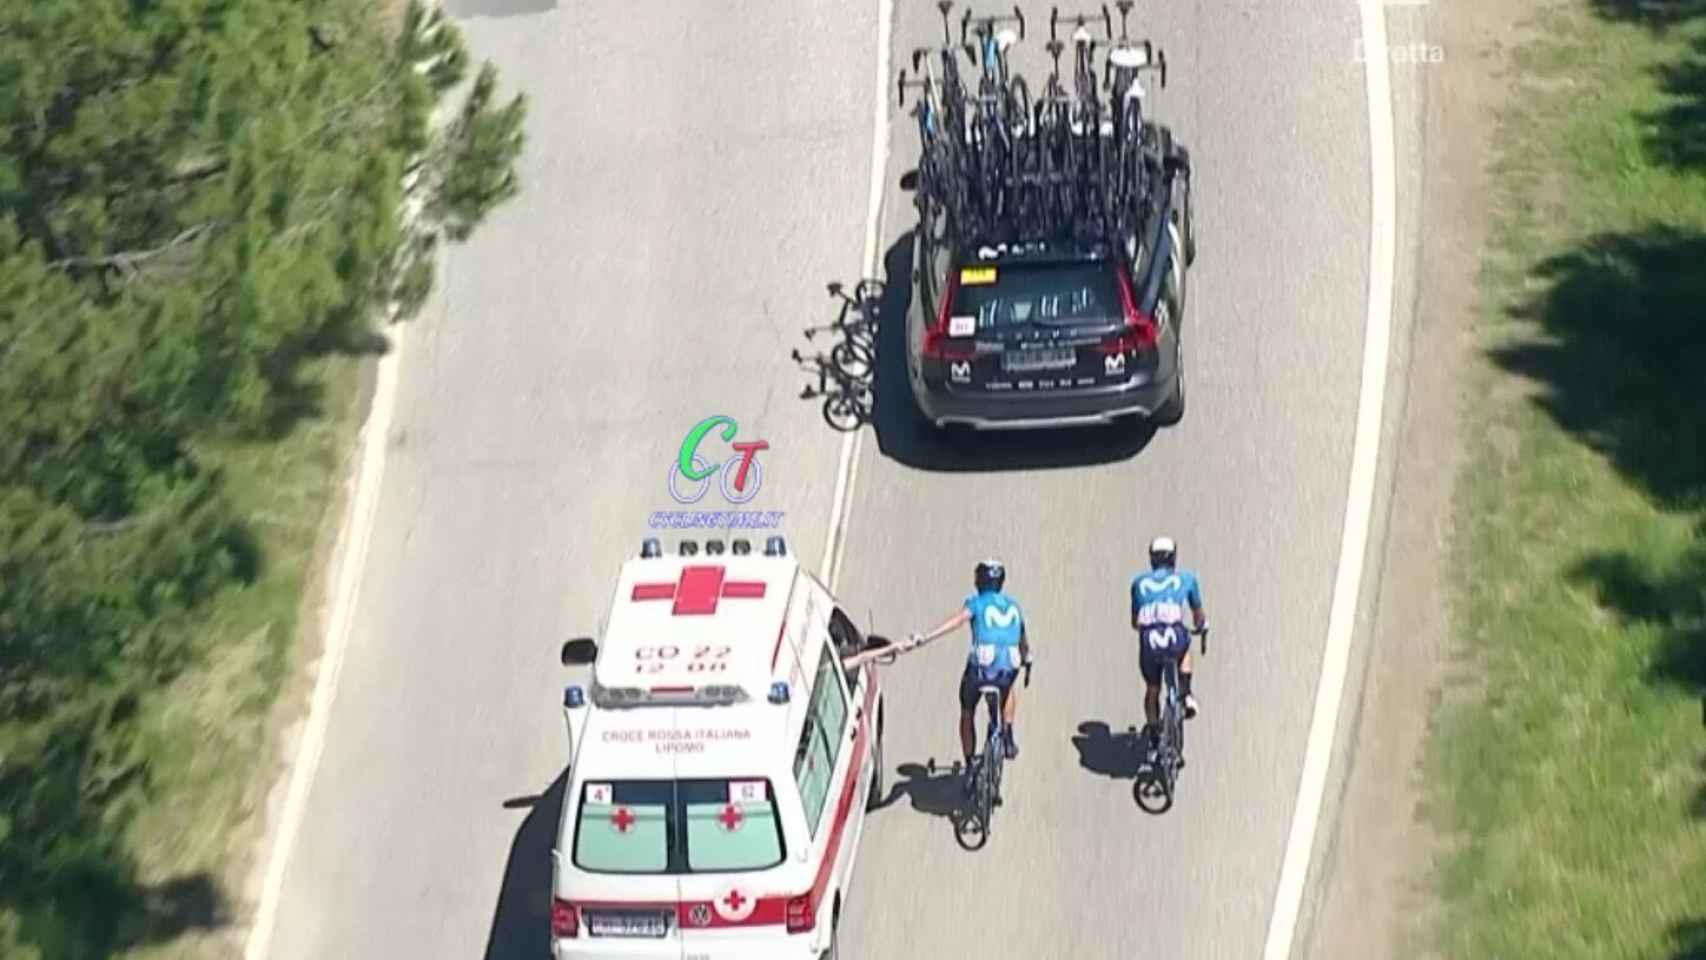 Marc Soler siendo atendido por el coche médico en el Giro de Italia